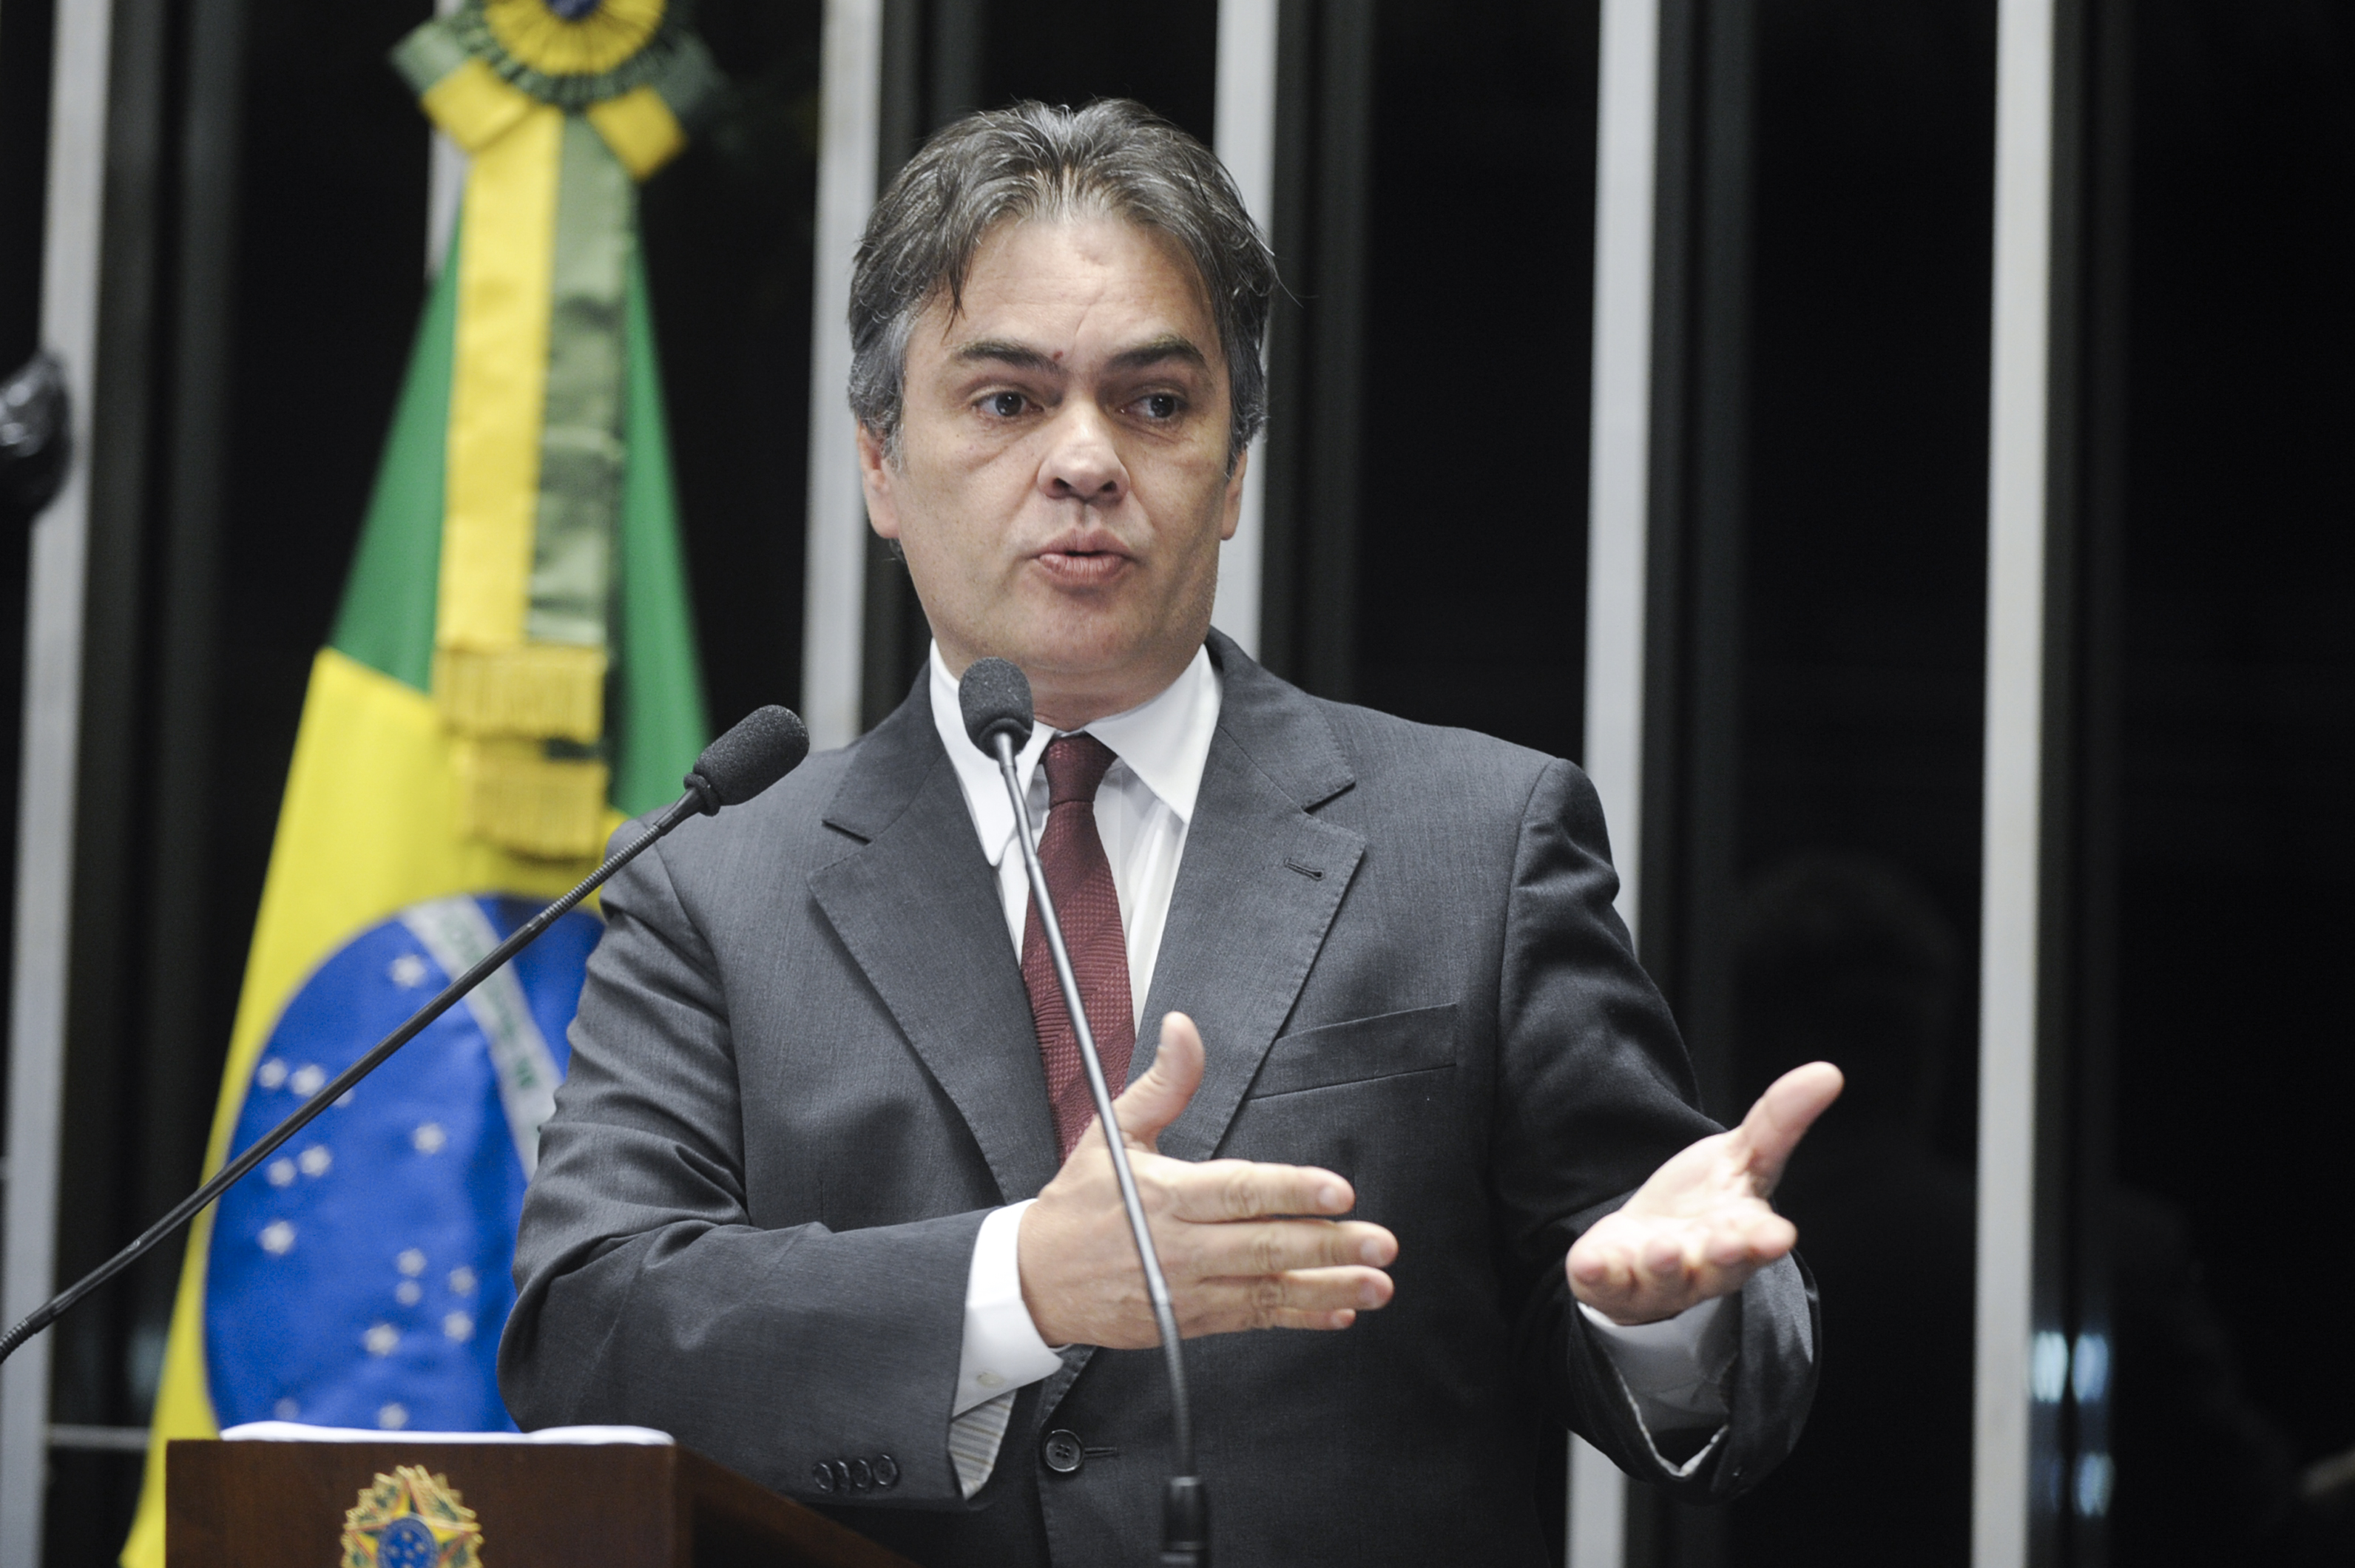 Senador Cássio Cunha Lima (PSDB-PB) fala durante sessão solene do Congresso Nacional destinada a homenagear o Centenário de João Agripino Filho